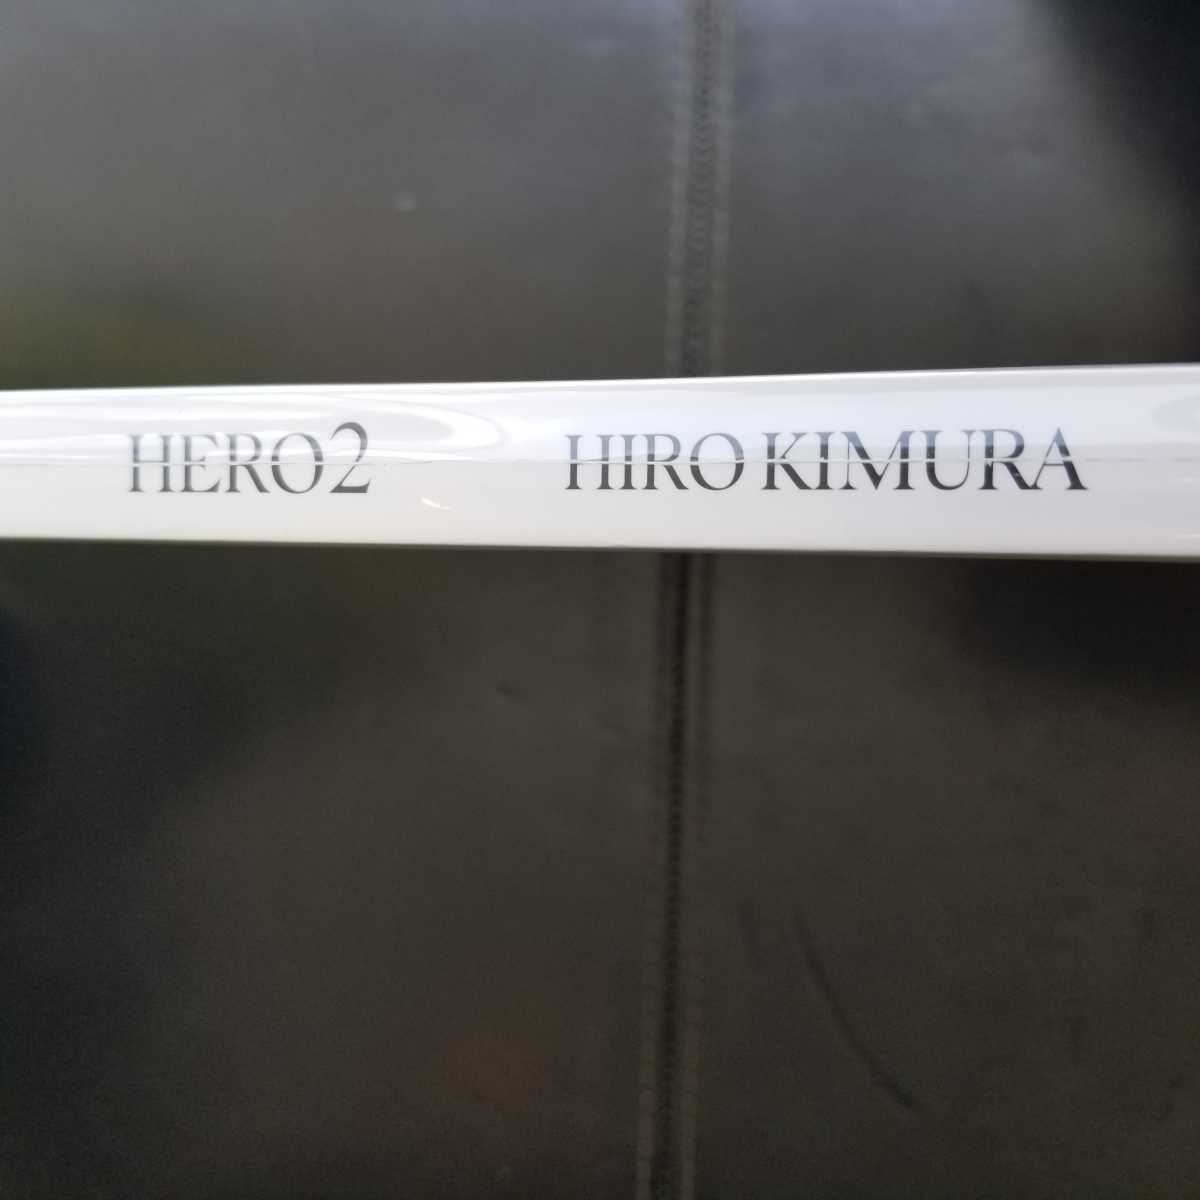 HIRO KIMURA写真展 HERO2 図録 写真集 三浦春馬 三浦翔平 福士蒼汰 